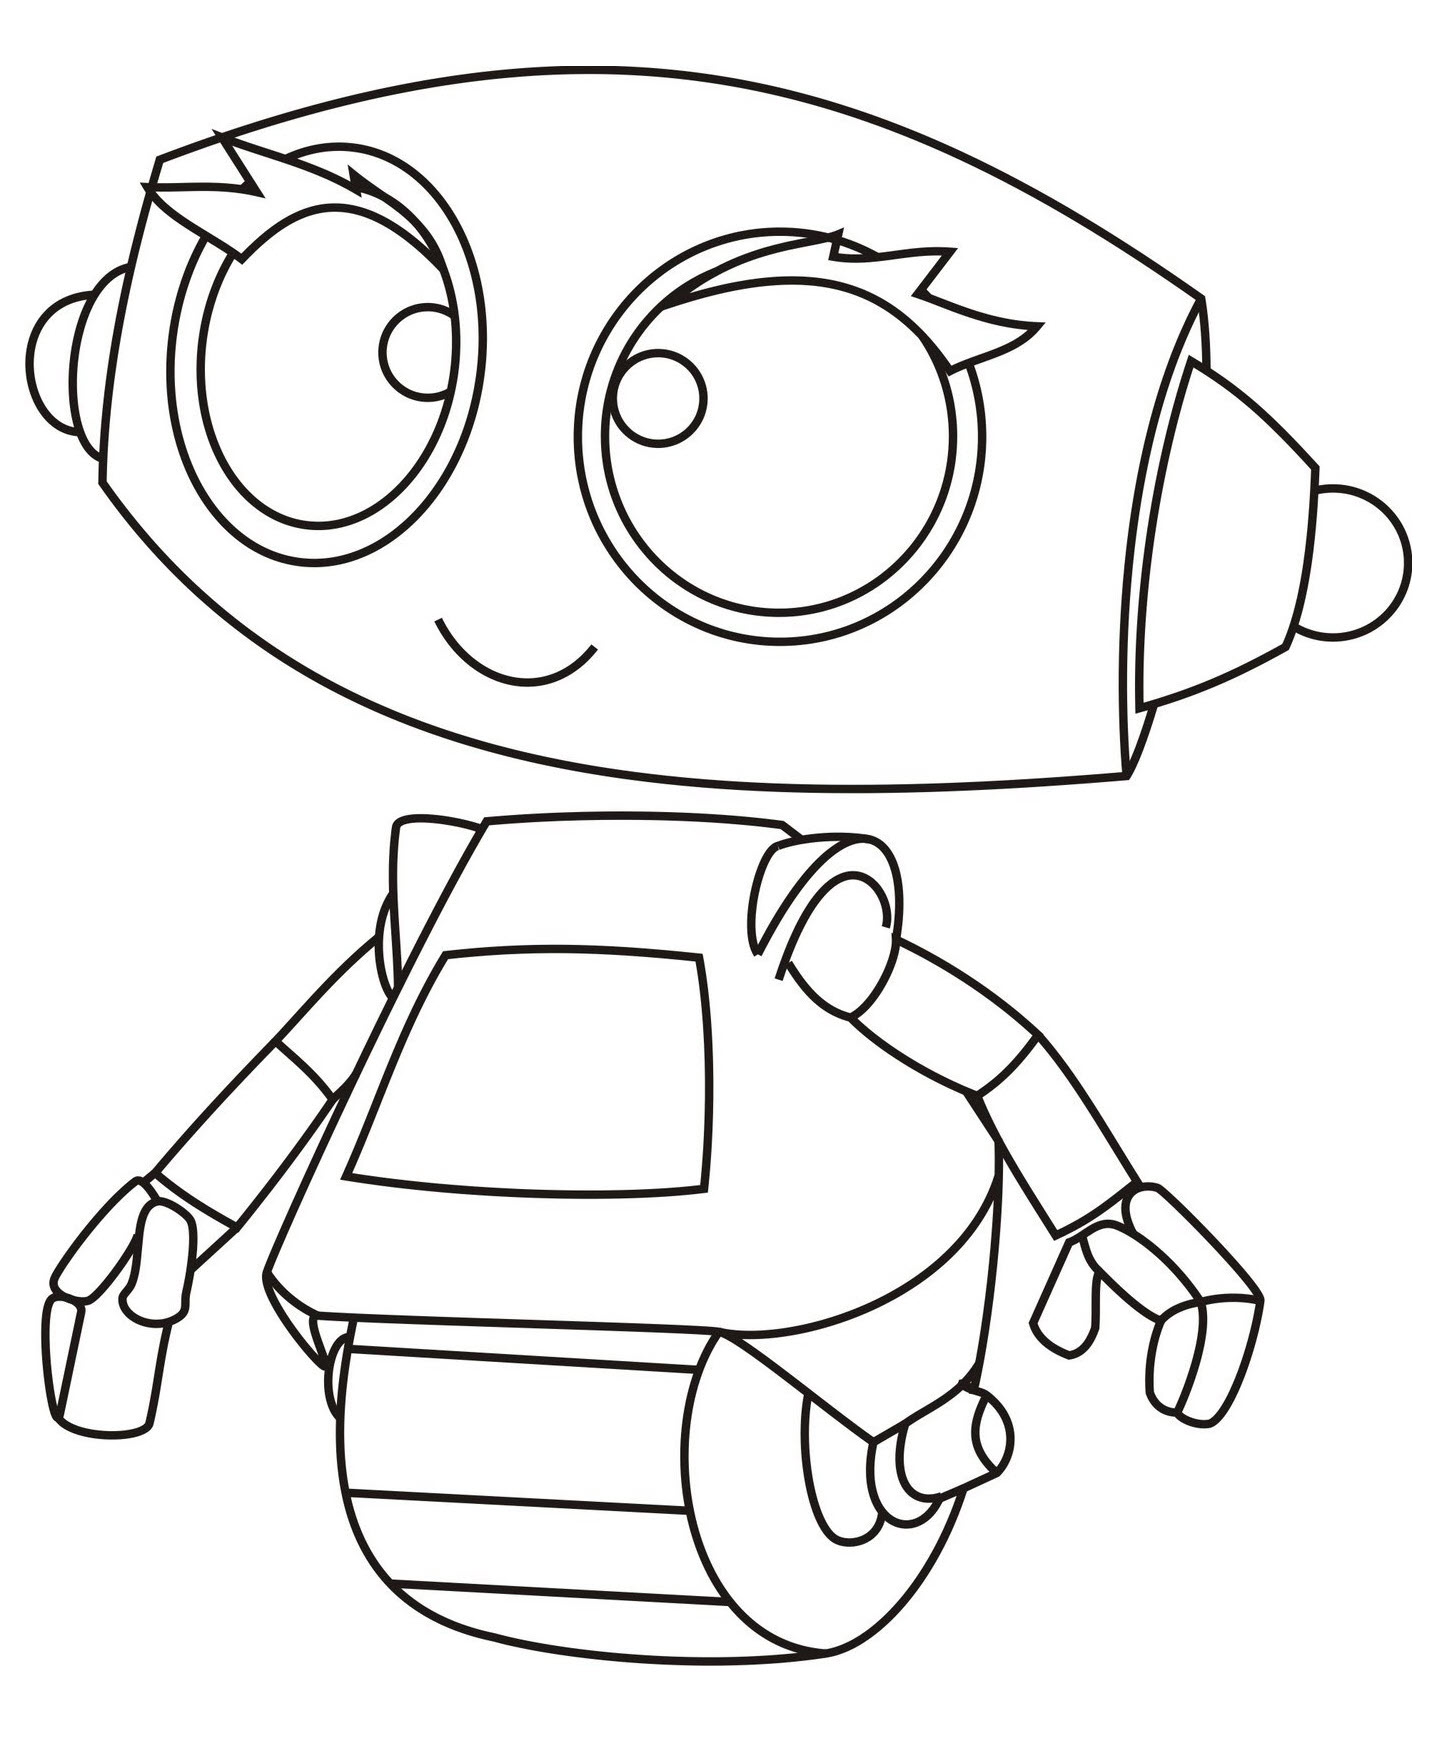 Tranh tô màu chủ đề Robot dành cho bé